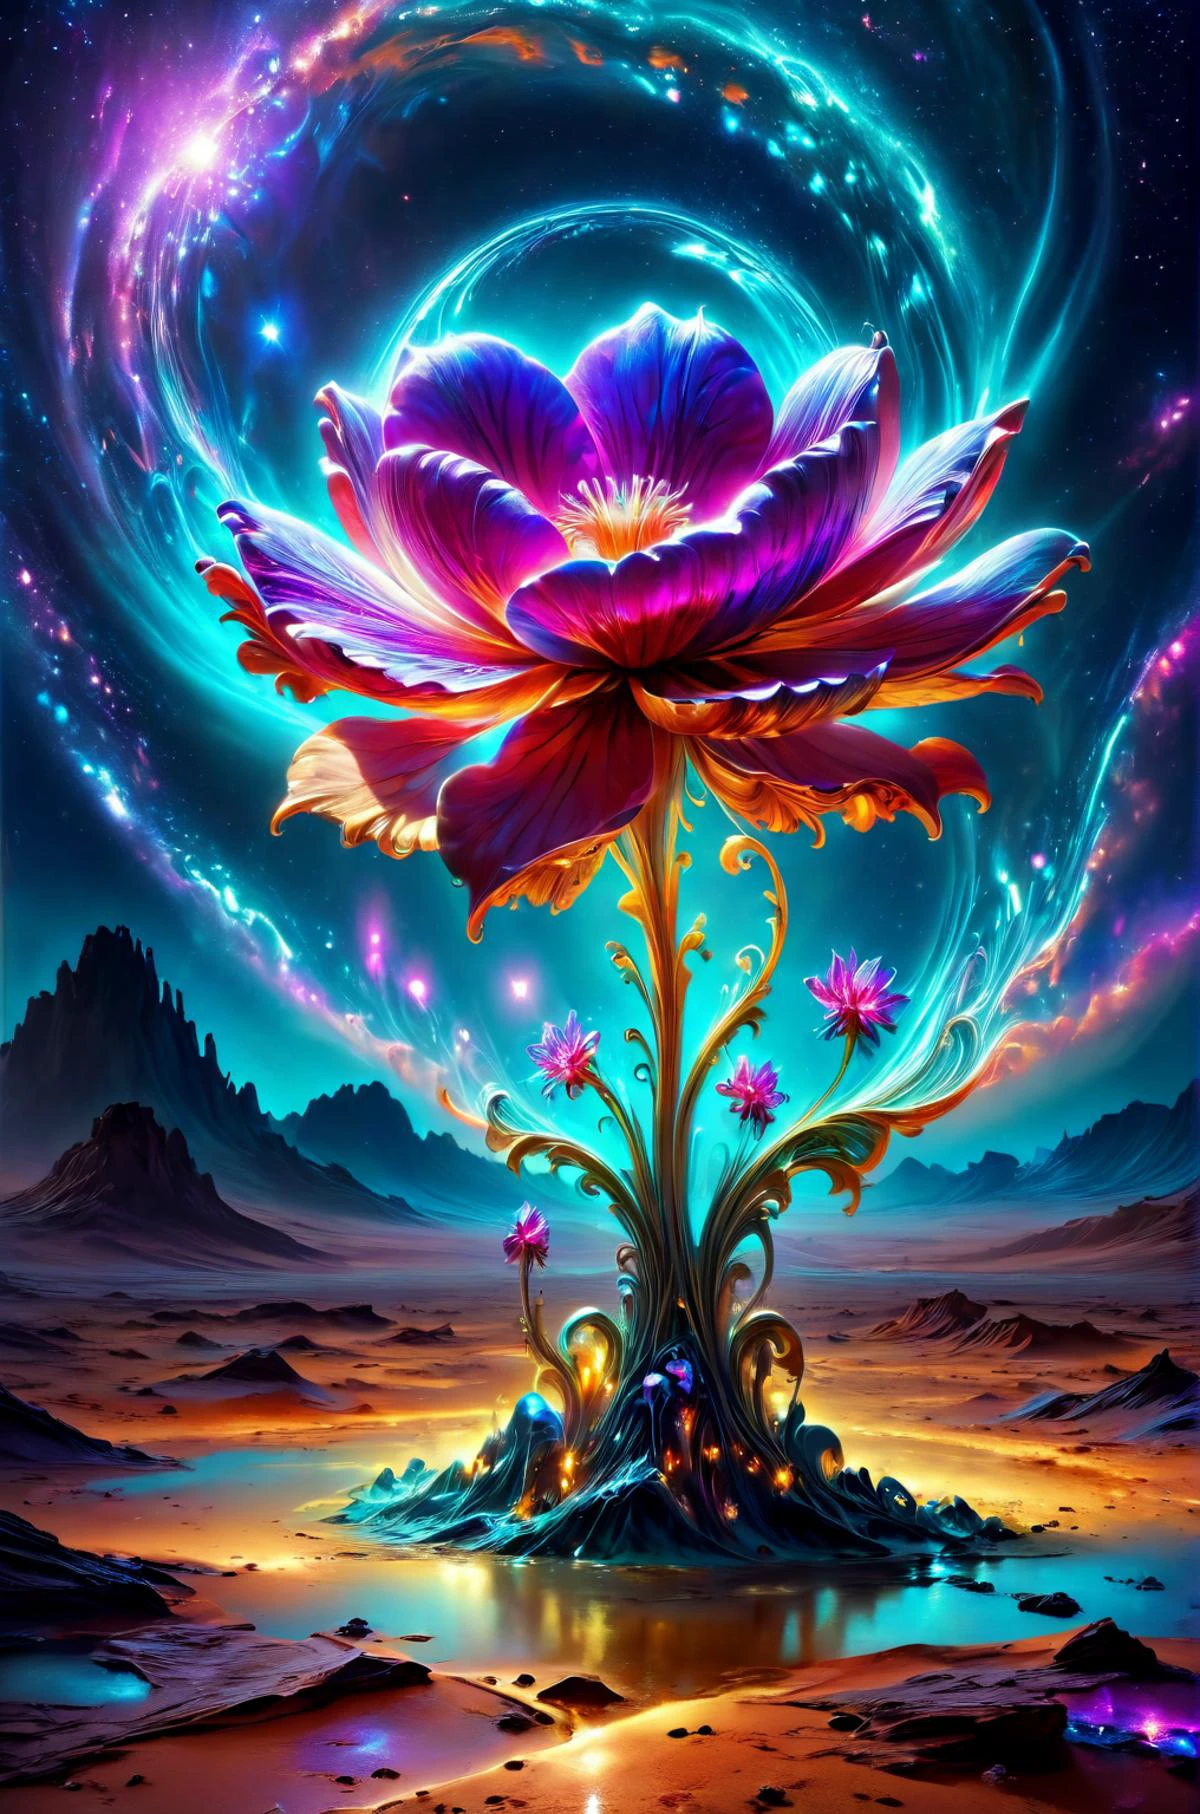 horror-themed Эфирный fantasy concept art of  breathtaking a delicate flower growing in the middle of the desert ColorART, красочный инопланетянин DonMASKTexXL , шедевр, отмеченный наградами, Профессиональный, очень подробный, великолепный, небесный, Эфирный, живописный, эпический, величественный, волшебный, Фэнтези-арт, обложка, мечтательный, жуткий, тревожный, темный, жуткий, тревожный, мрачный, очень подробный